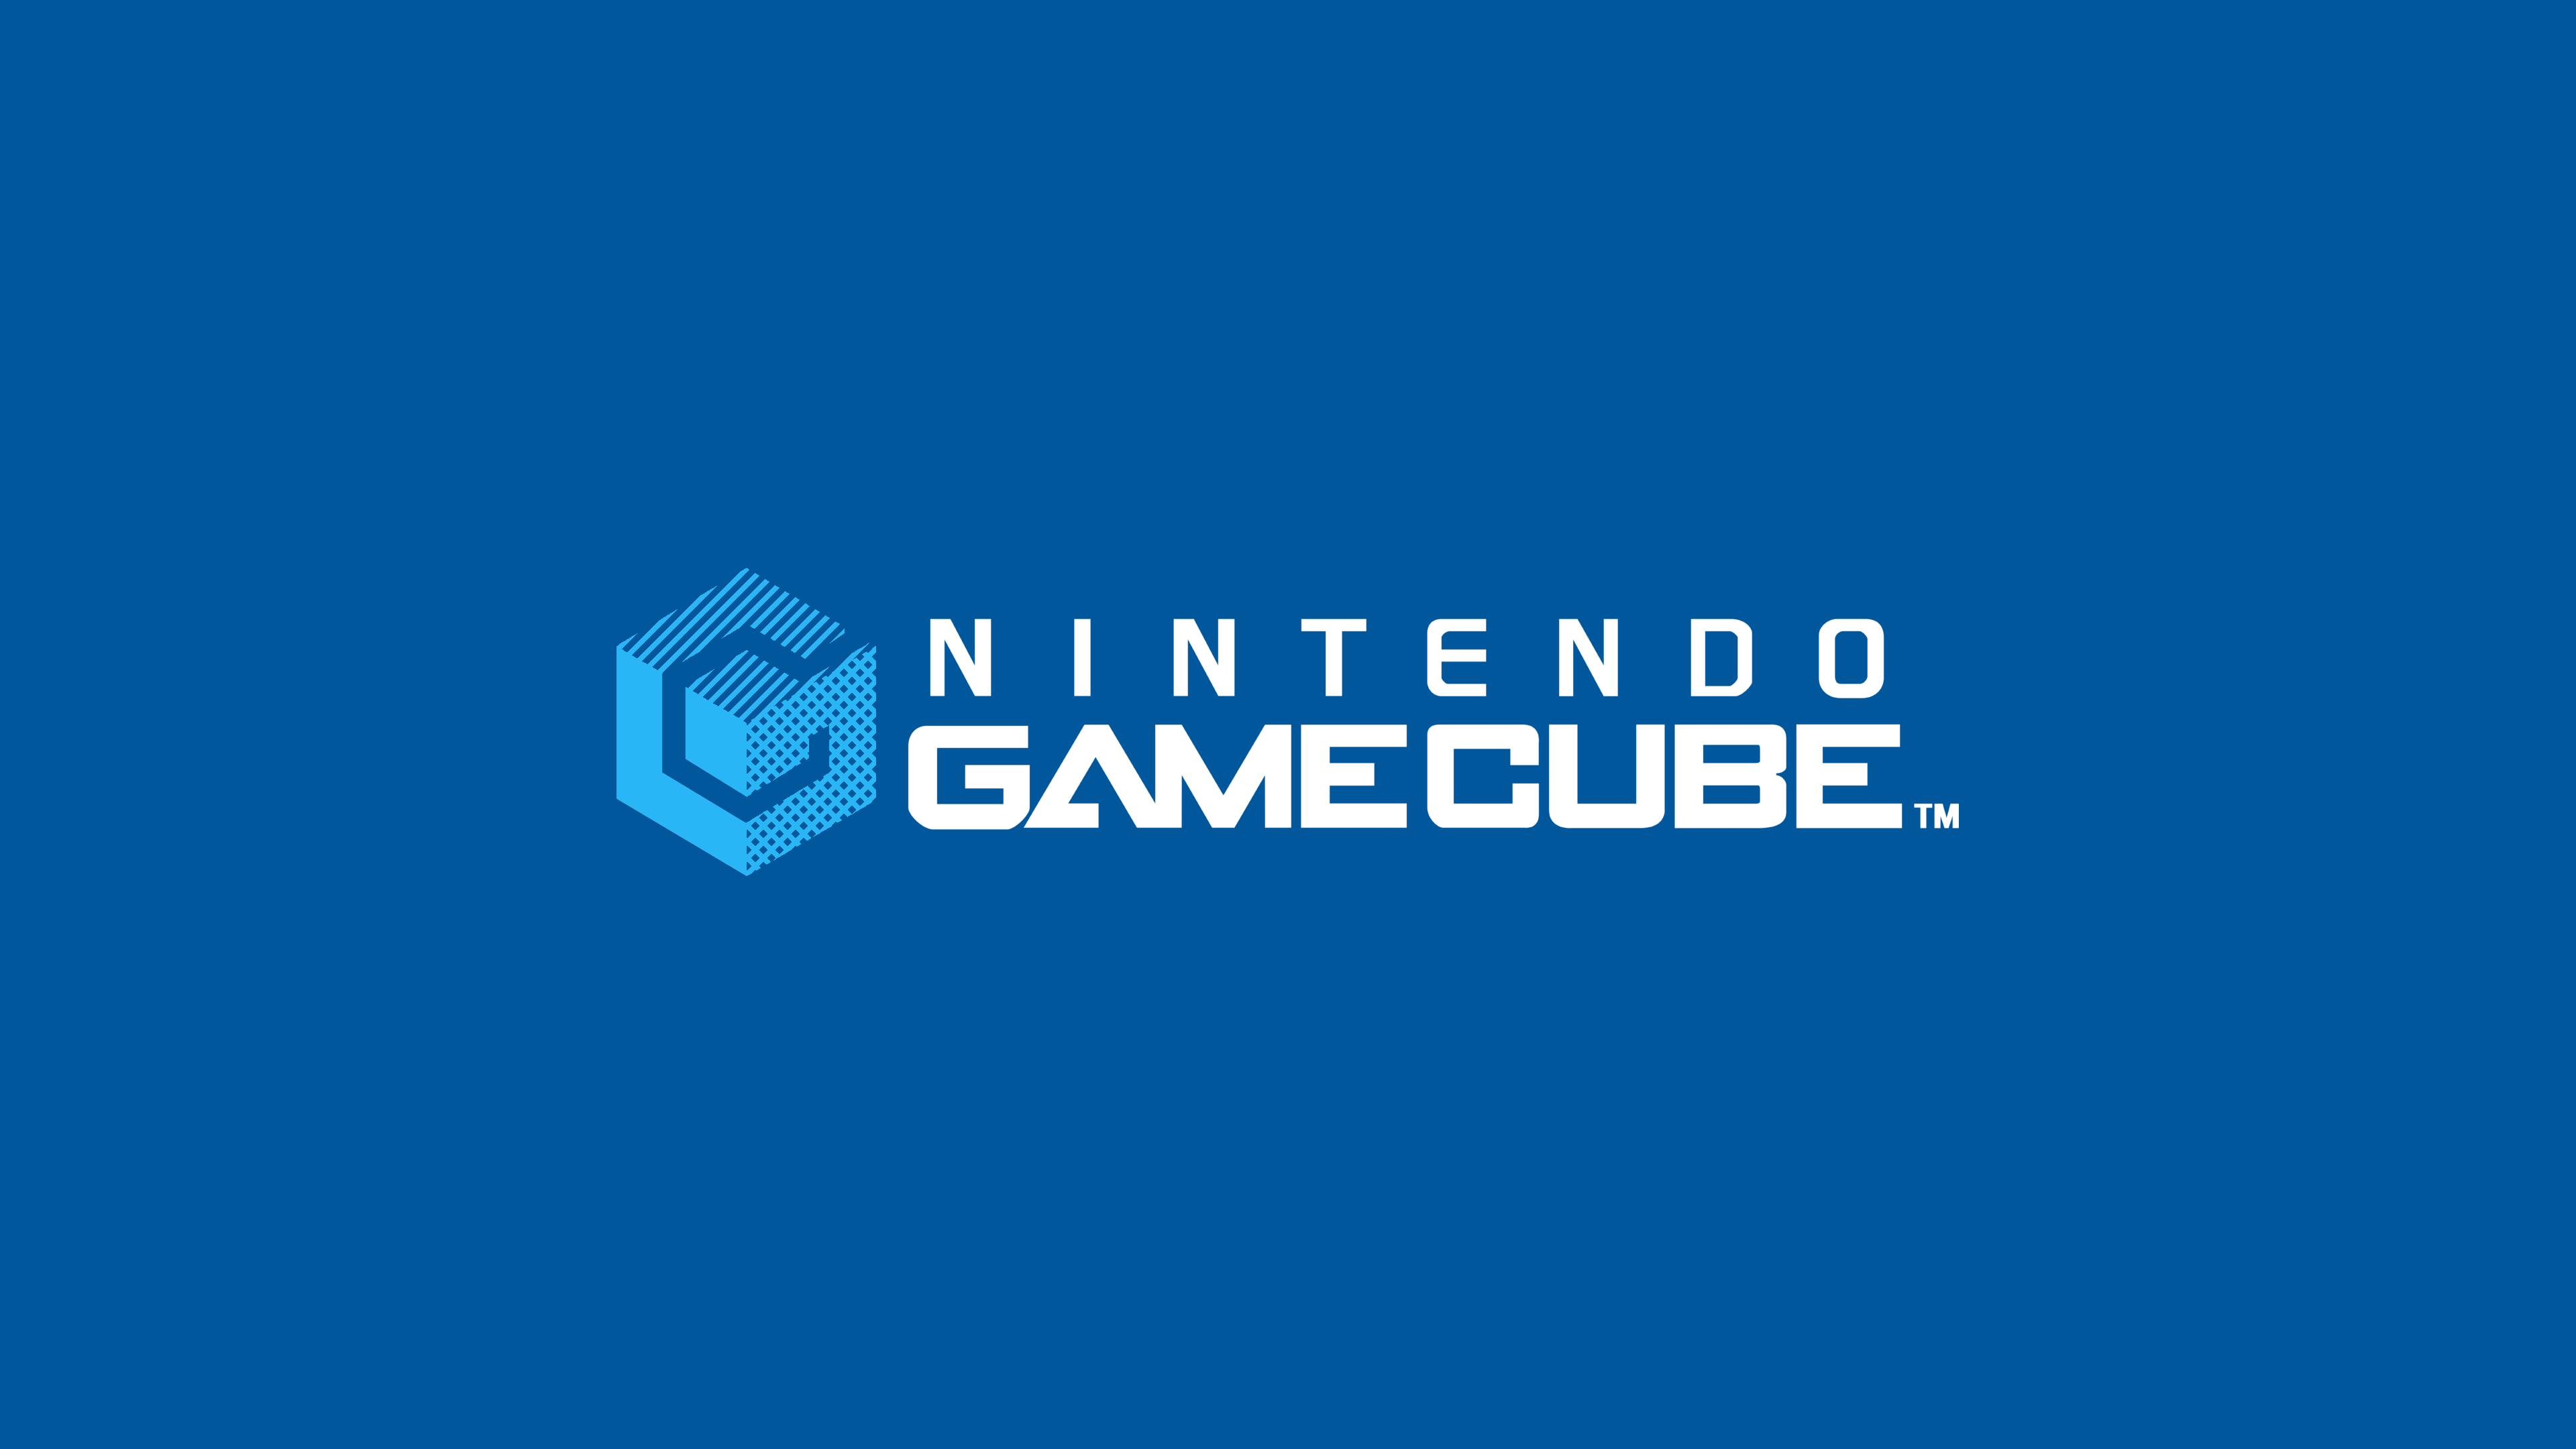 Nintendo Gamecube Widescreen Logo Wallpaper 61654 3840x2160 px